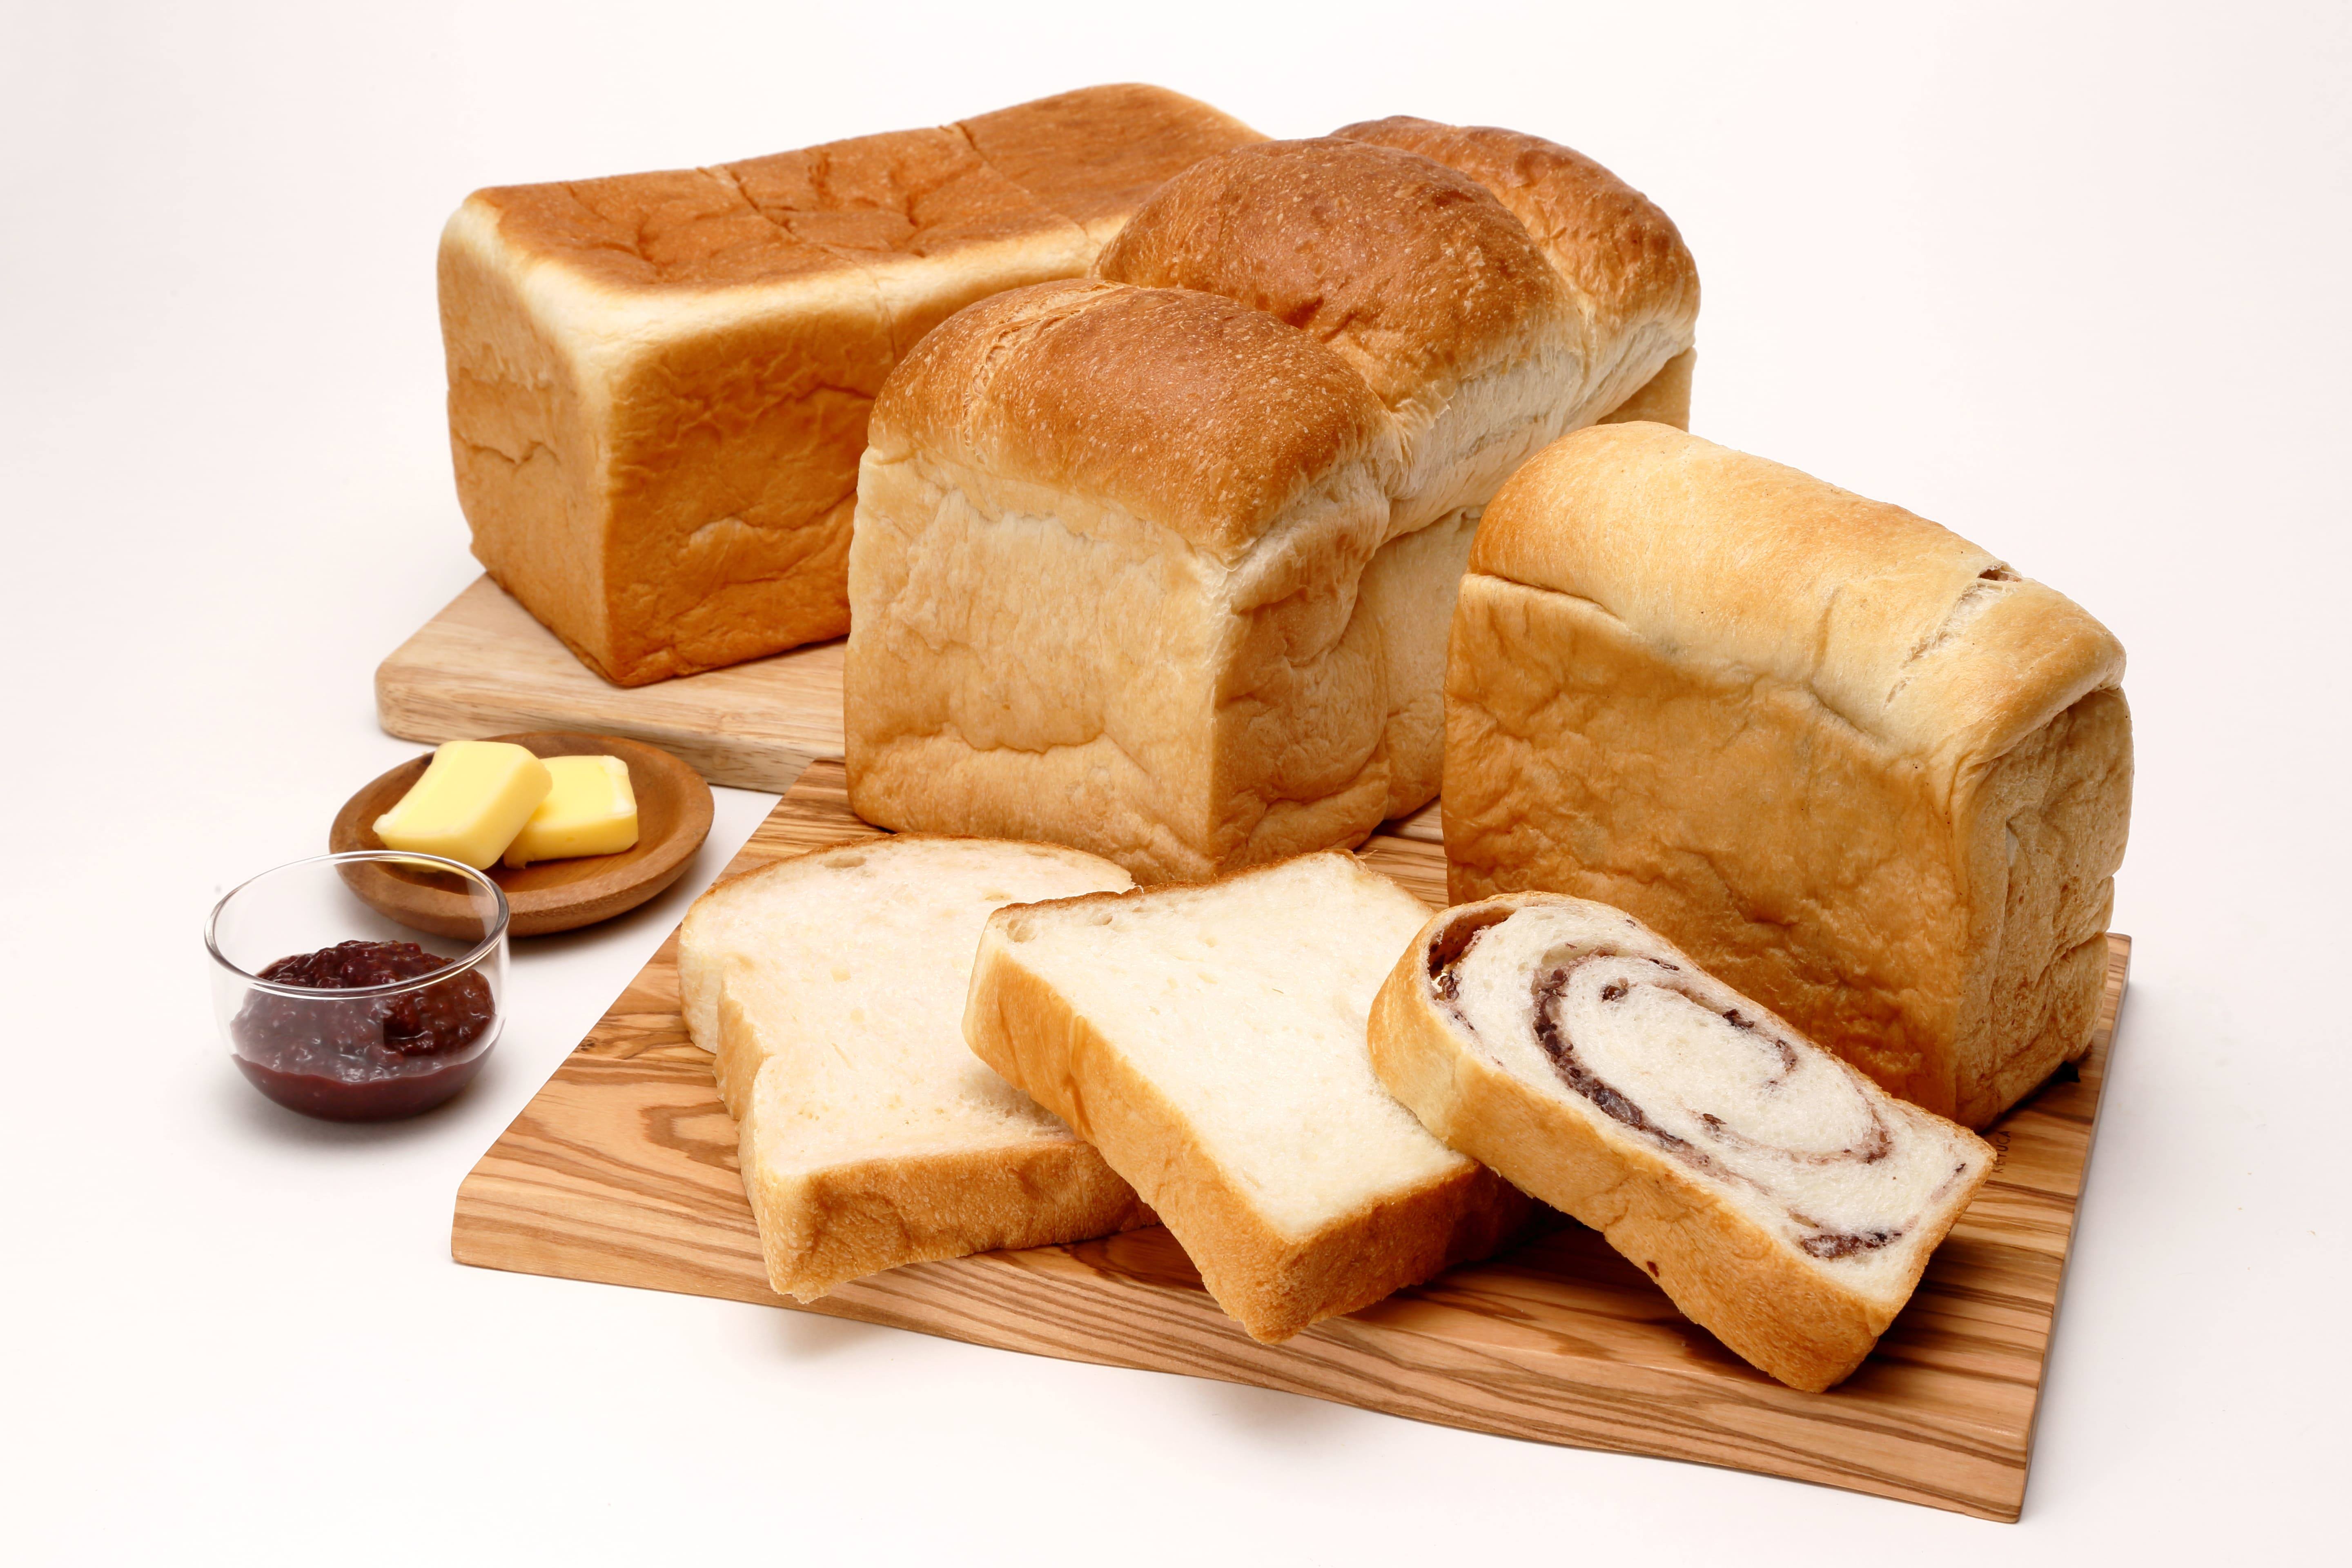 “発酵の新たな食体験”をテーマとした
茨城県のご当地食パン専門店が12月6日にグランドオープン